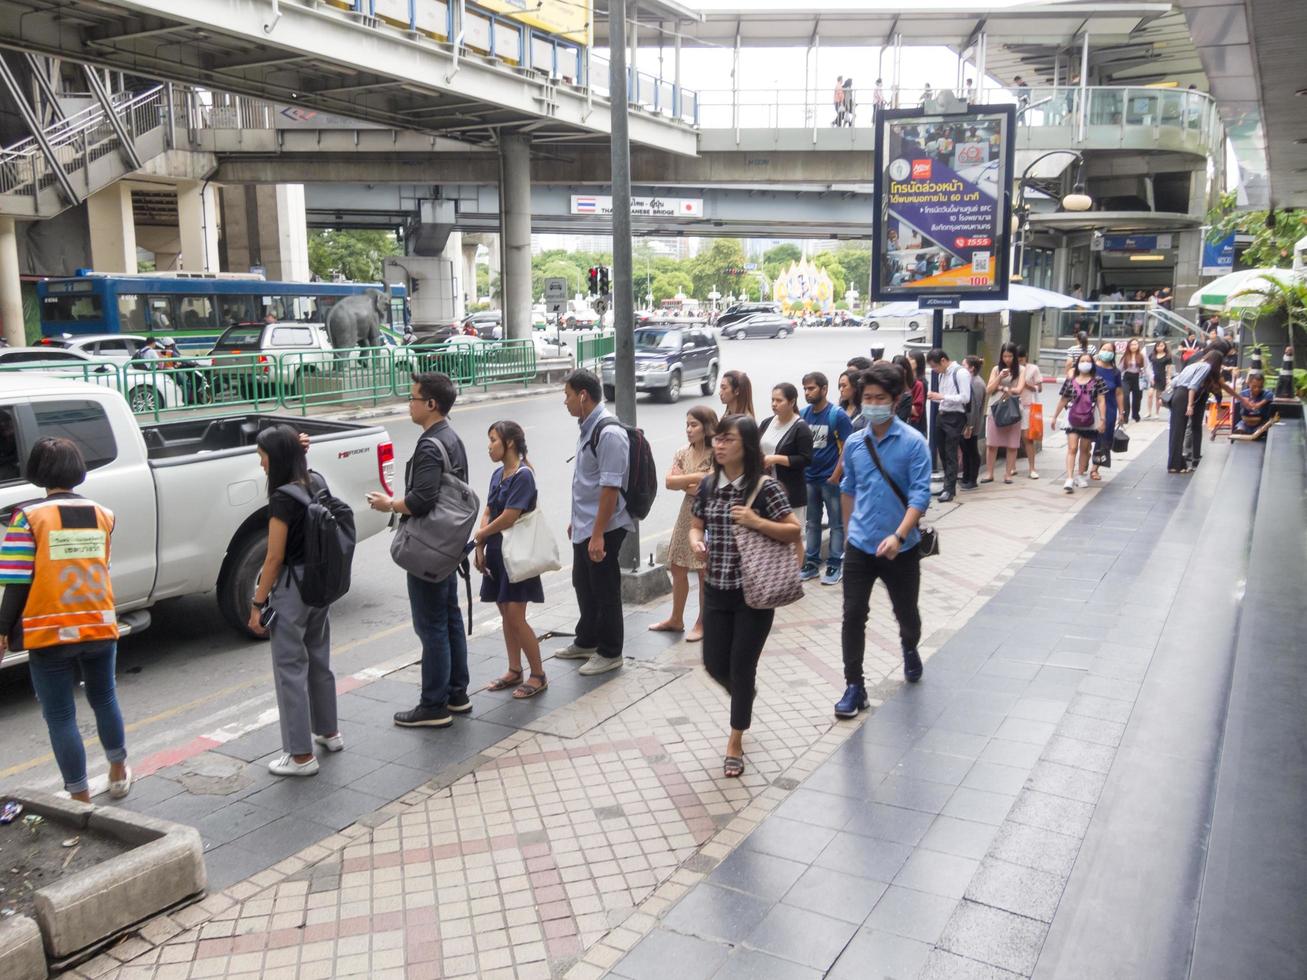 silom bangkokthailand16 août 2018 le matin, les gens se rendent au travail à pied et font des activités comme acheter du café pour acheter ou acheter des billets de loterie et faire la queue pour une moto. photo